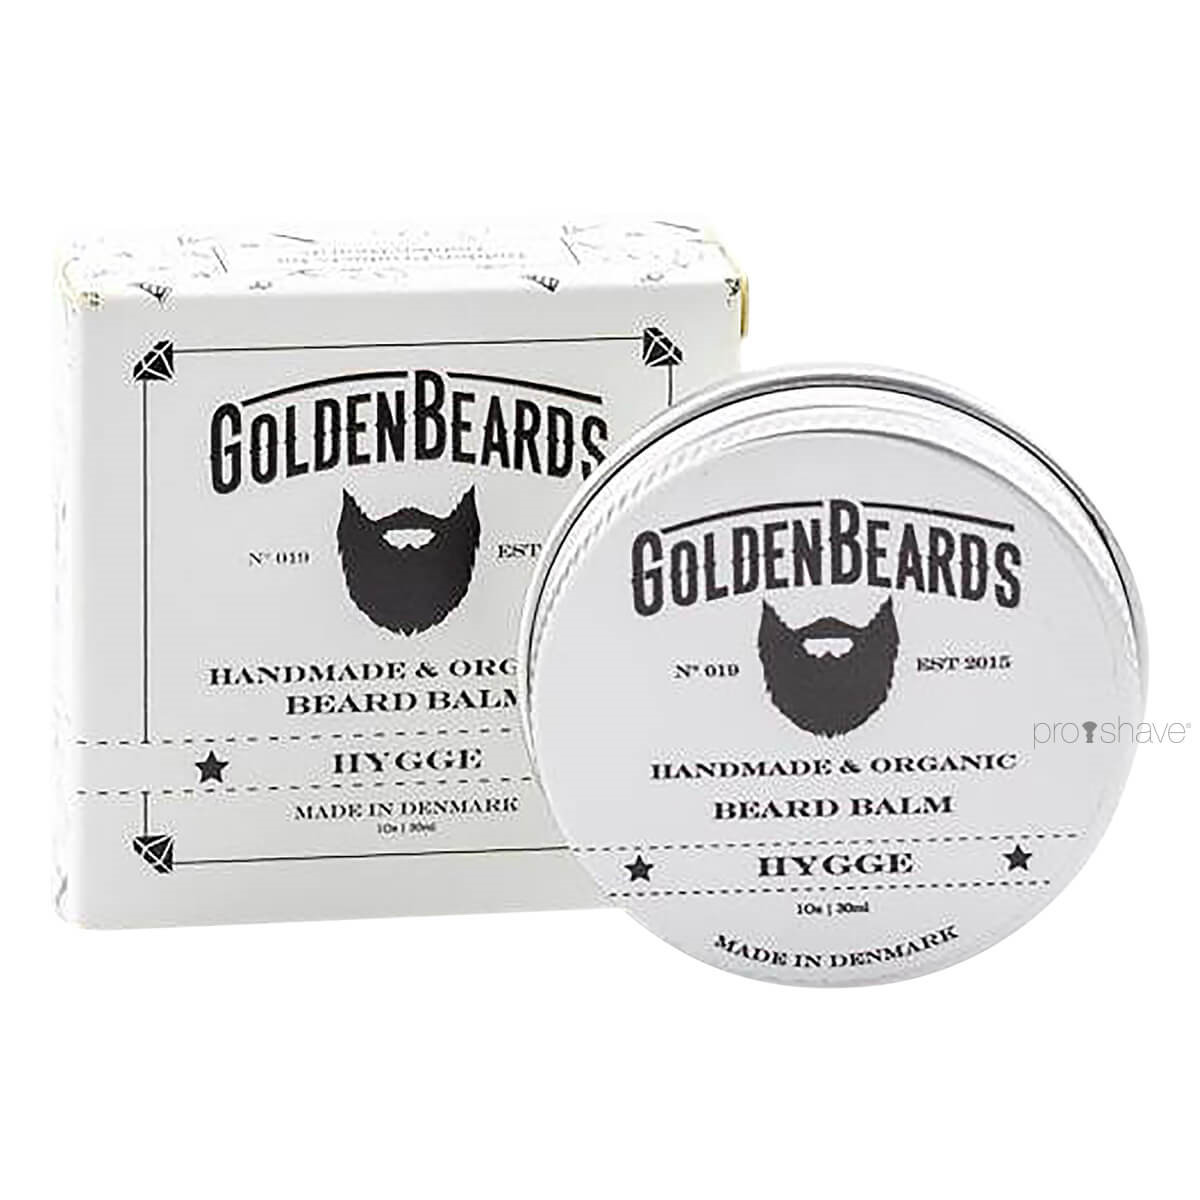 Golden Beards Skægbalm, Hygge, 30 ml.